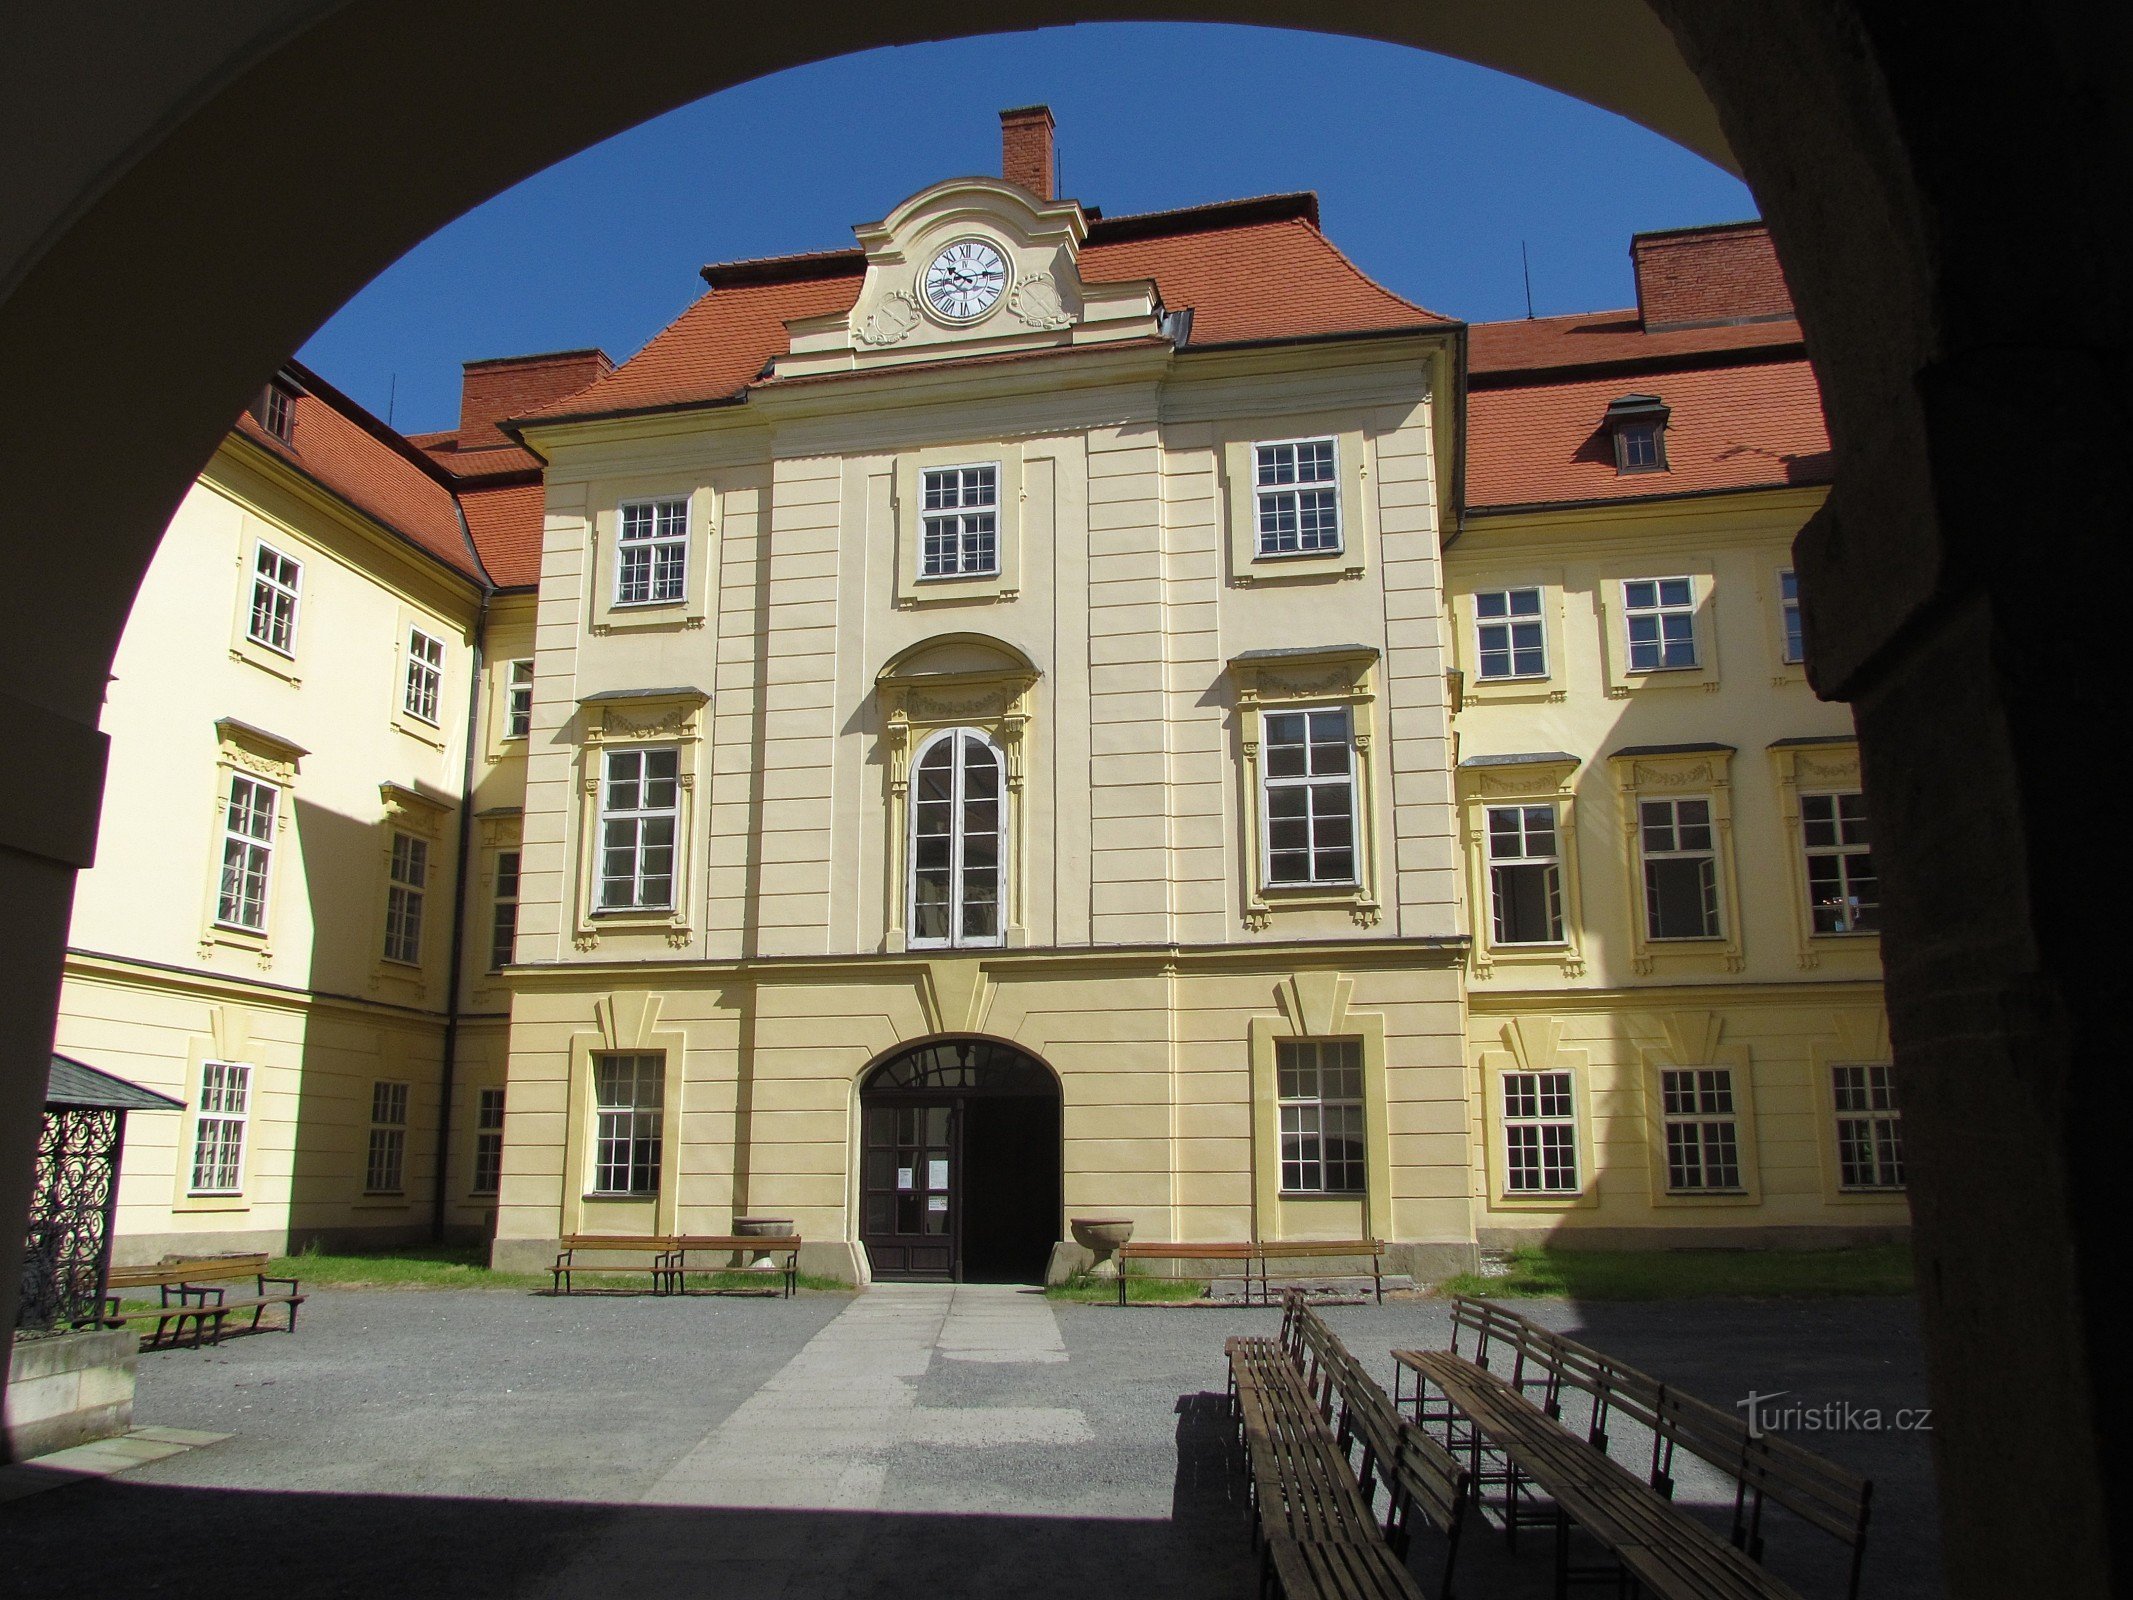 Tour do castelo em Bystřice pod Hostýnem